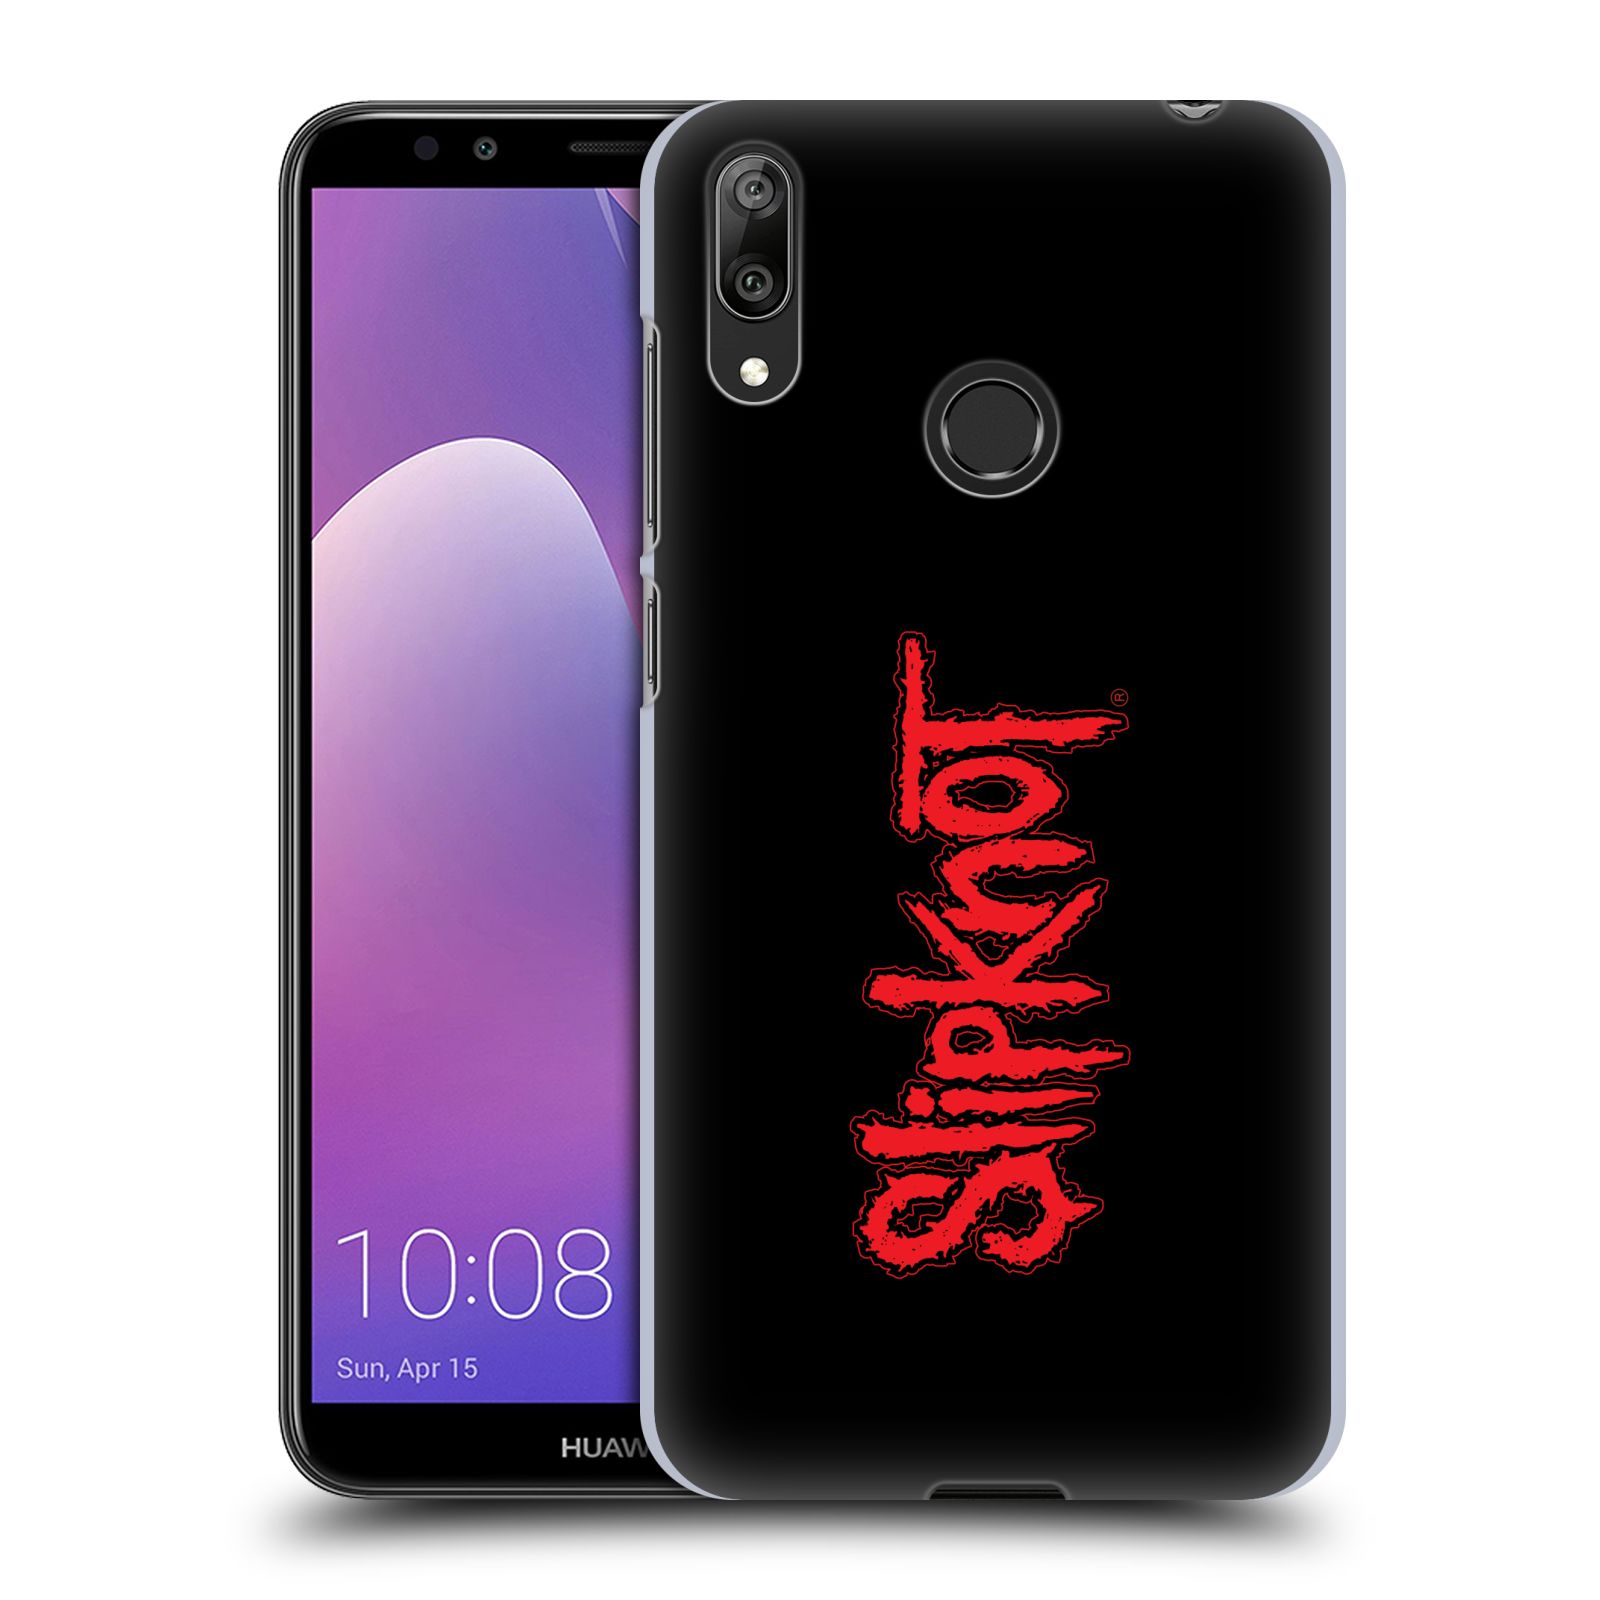 Pouzdro na mobil Huawei Y7 2019 - Head Case - hudební skupina Slipknot logo velké